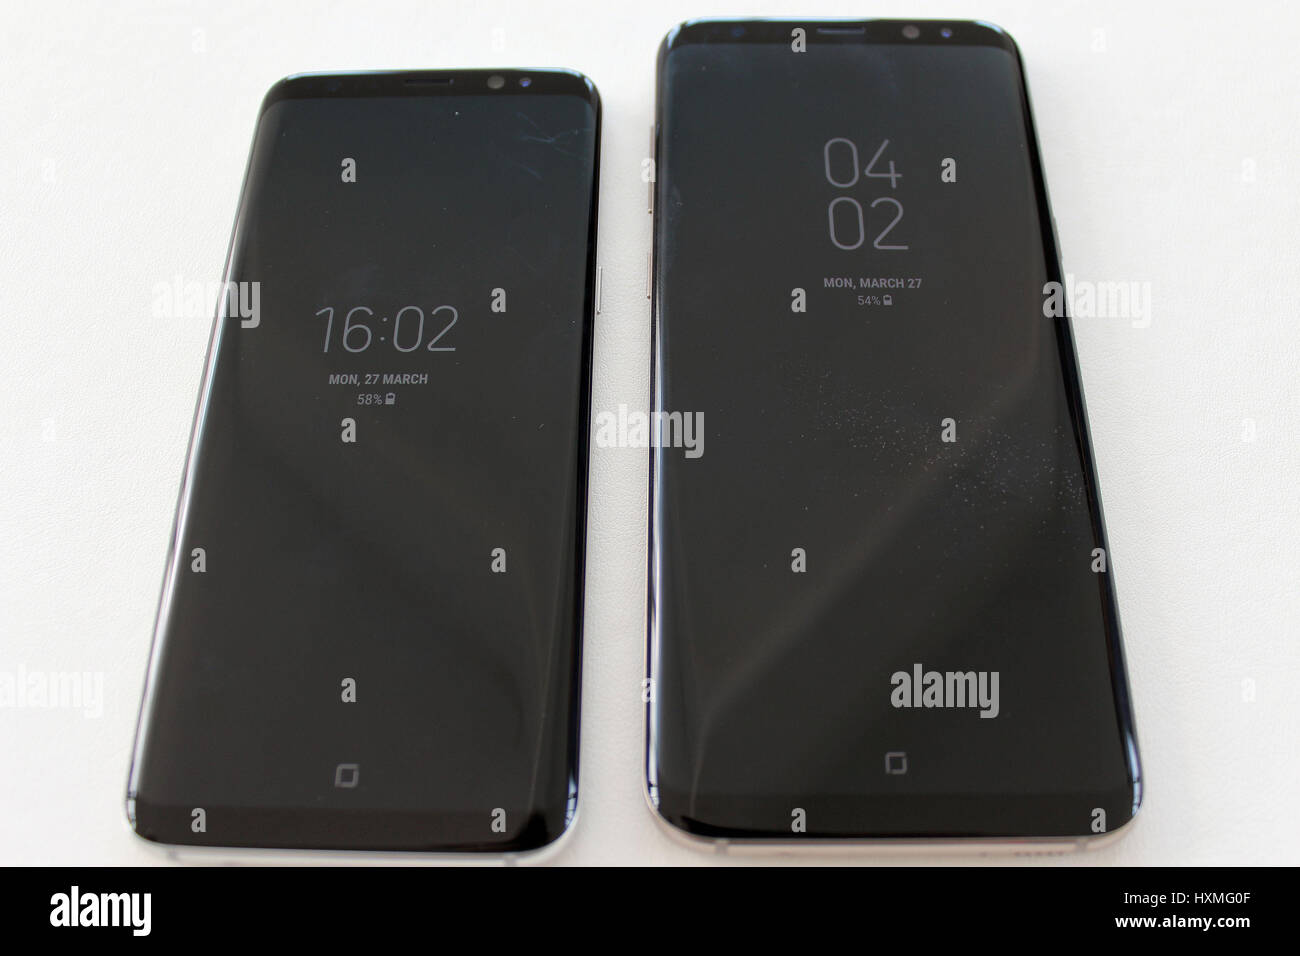 Il nuovo Samsung Galaxy S8 (sinistra) e S8+ sul display a Londra, la società del primo poiché essi sono stati costretti a ricordare la sua nota7 dispositivo nel tardo 2016 sul fuoco e i timori per la sicurezza. Foto Stock